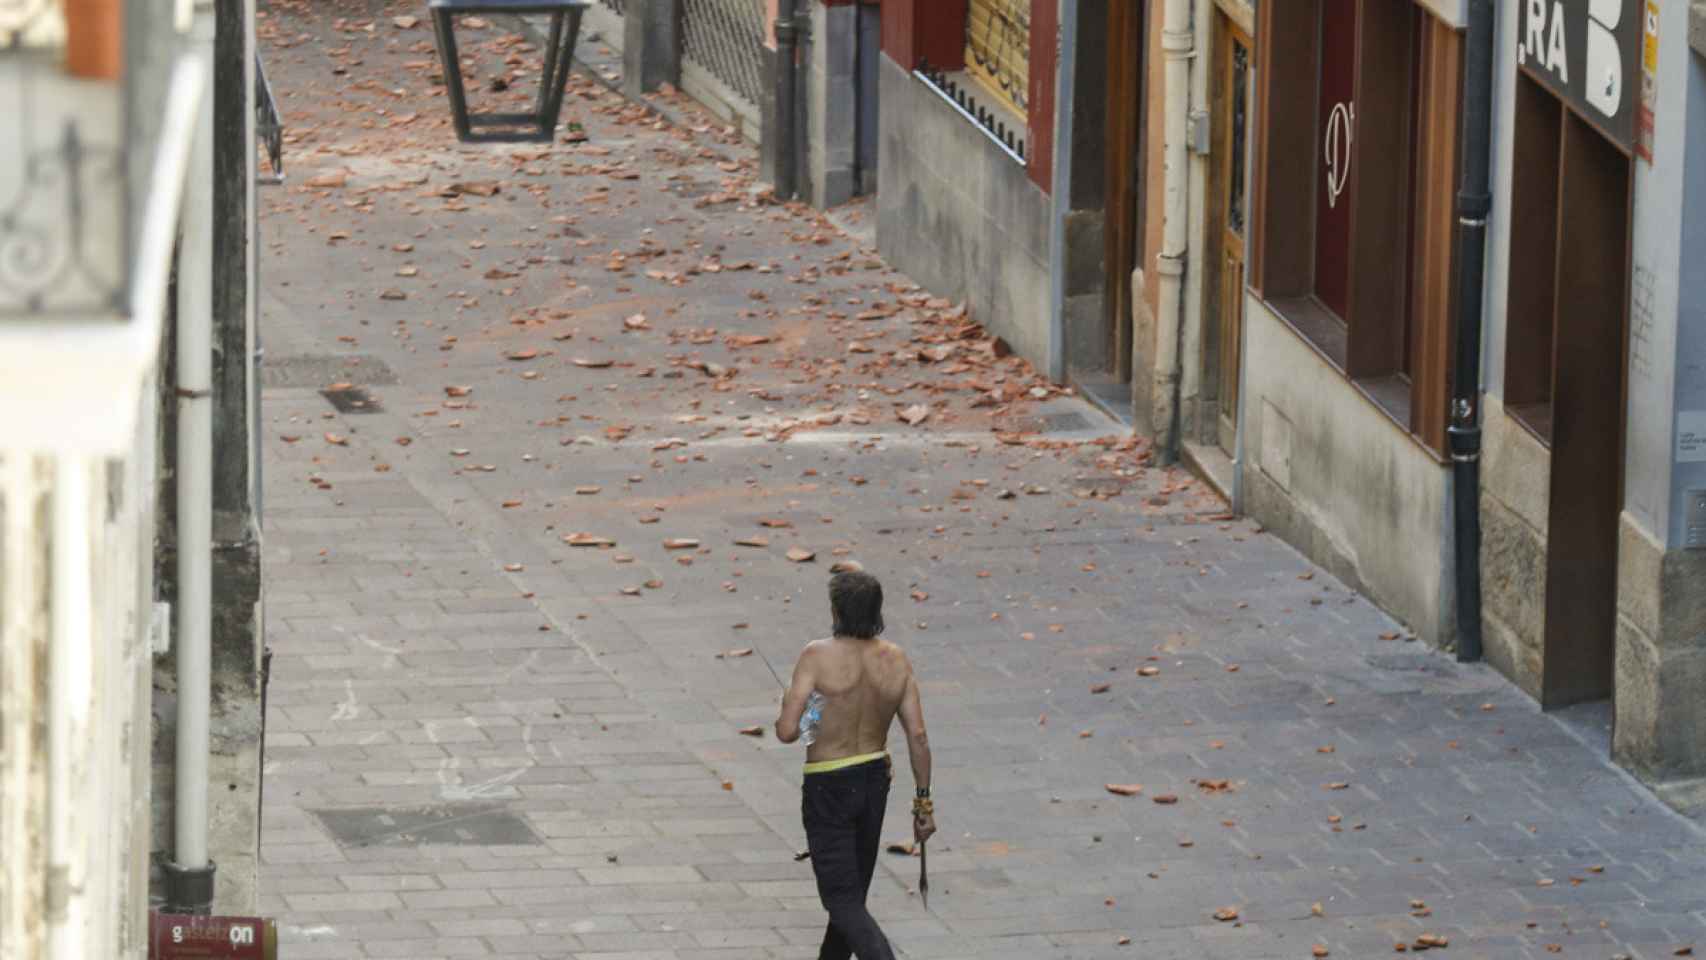 El hombre que se ha atrincherado en su piso en el Casco Viejo de Vitoria, camina por la calle armado con un hacha. / EFE/David Aguilar